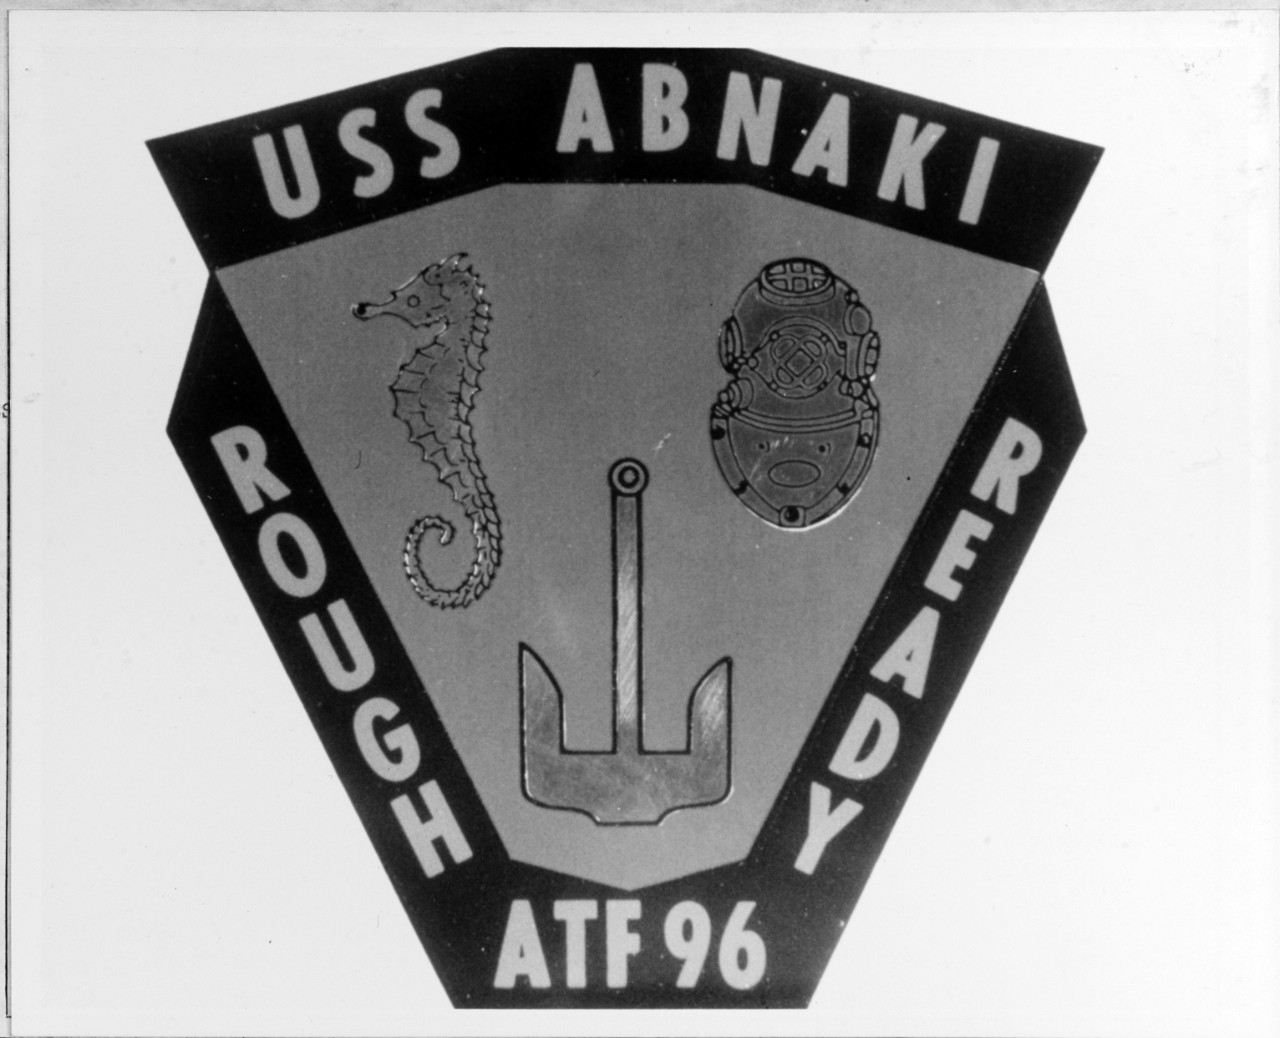 Insignia:  USS ABNAKI (ATF-96)